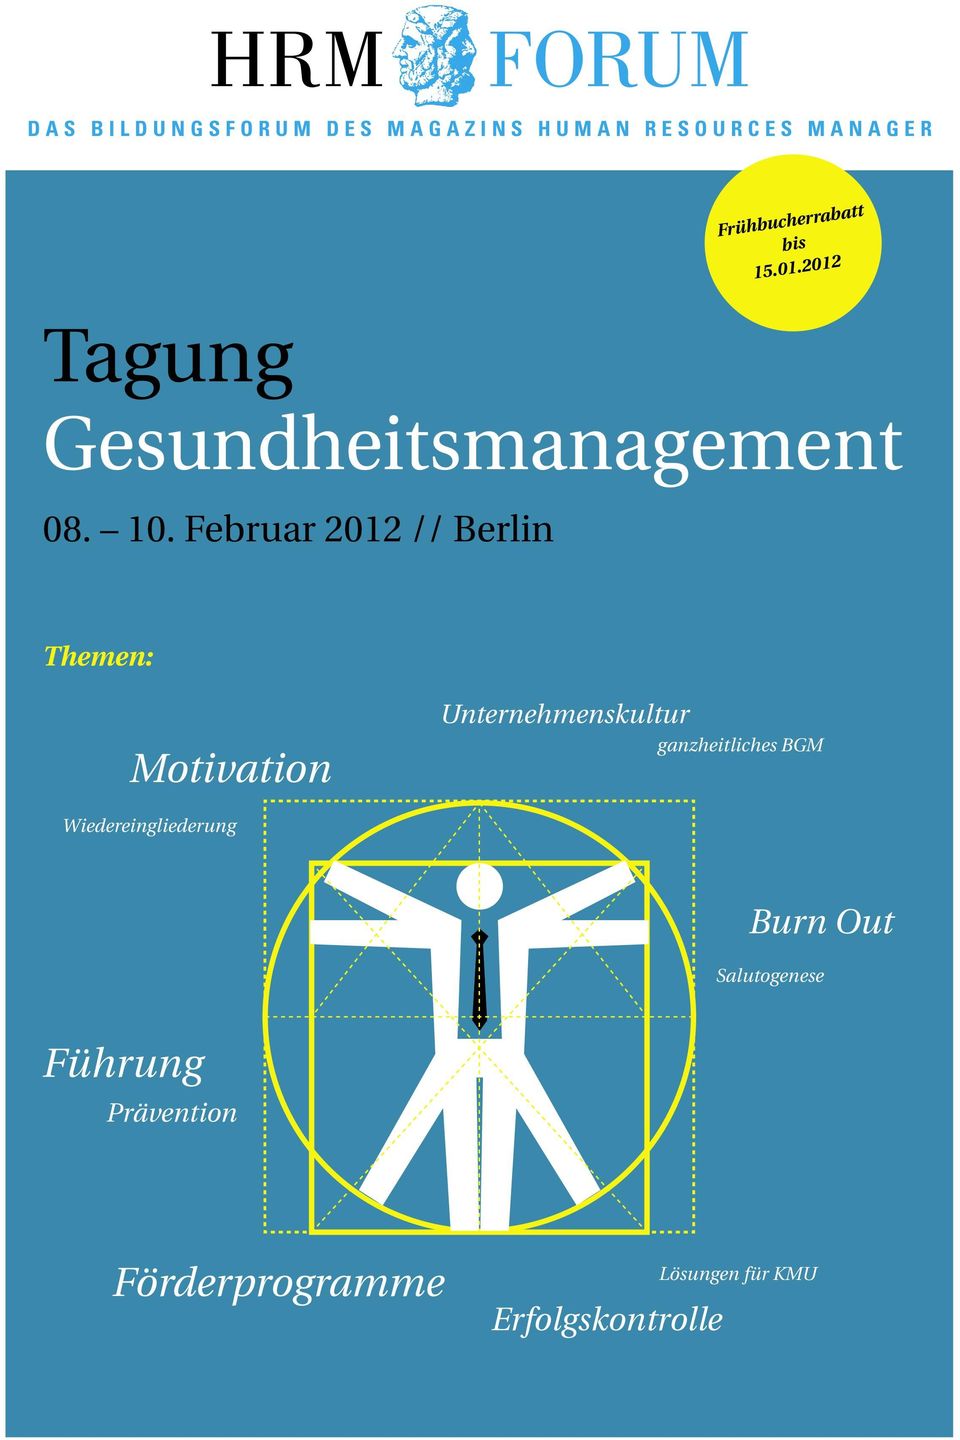 Februar 2012 // Berlin Themen: Motivation Unternehmenskultur ganzheitliches BGM